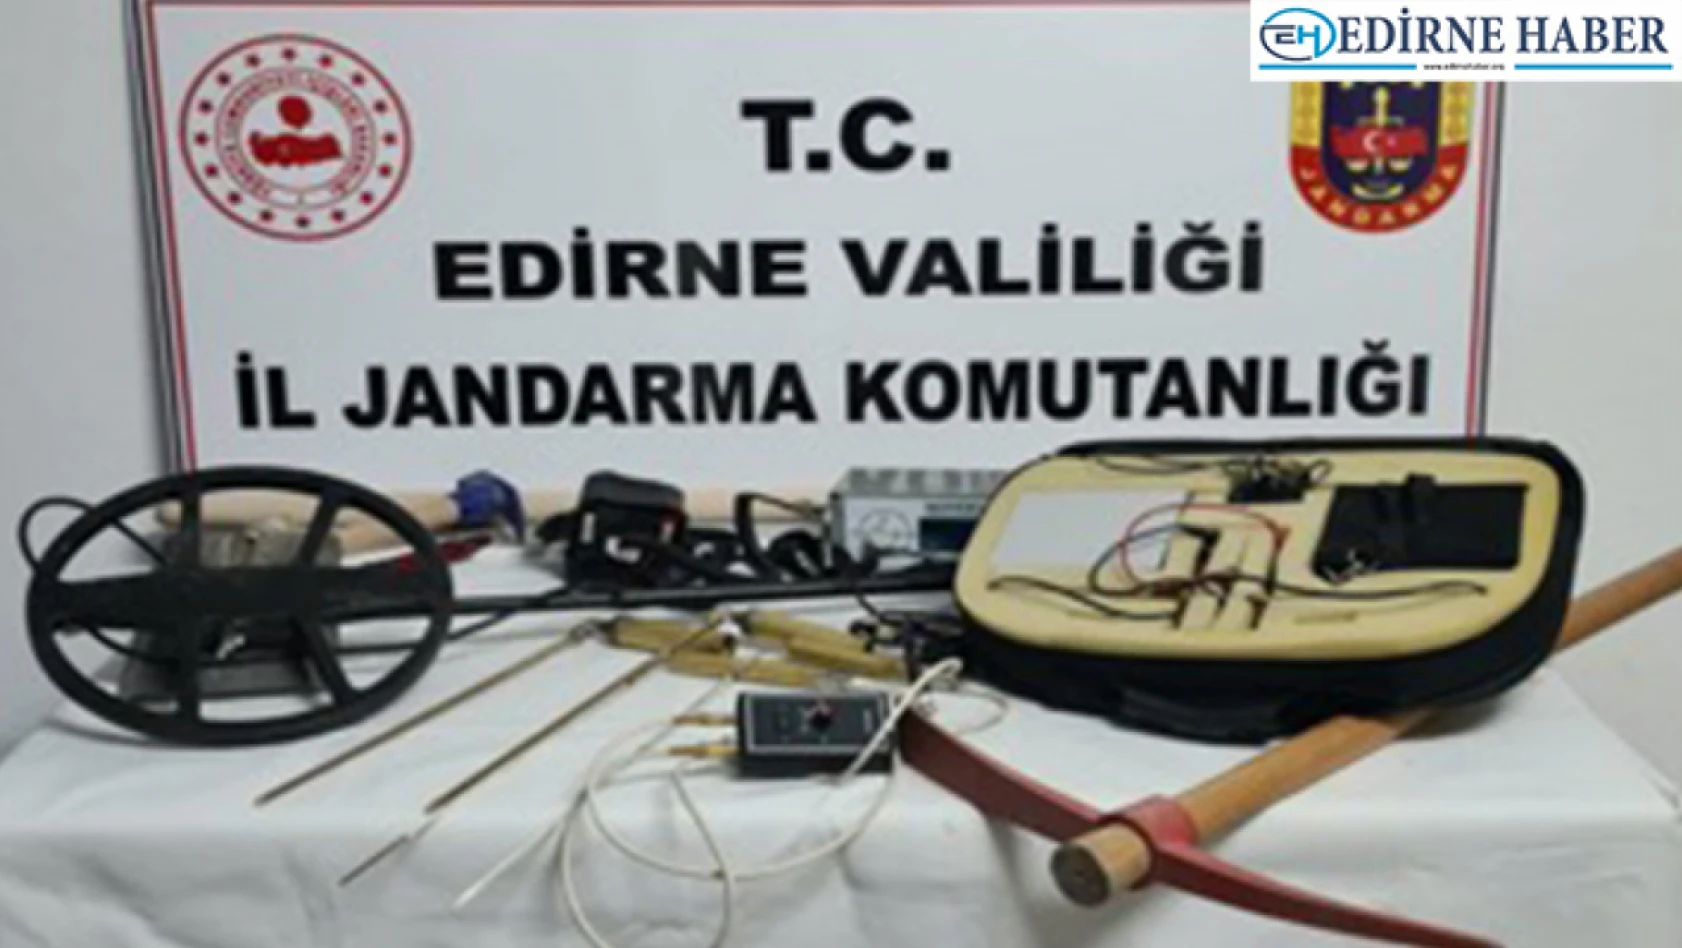 Edirne'de izinsiz kazı yapan 5 kişi suçüstü yakalandı